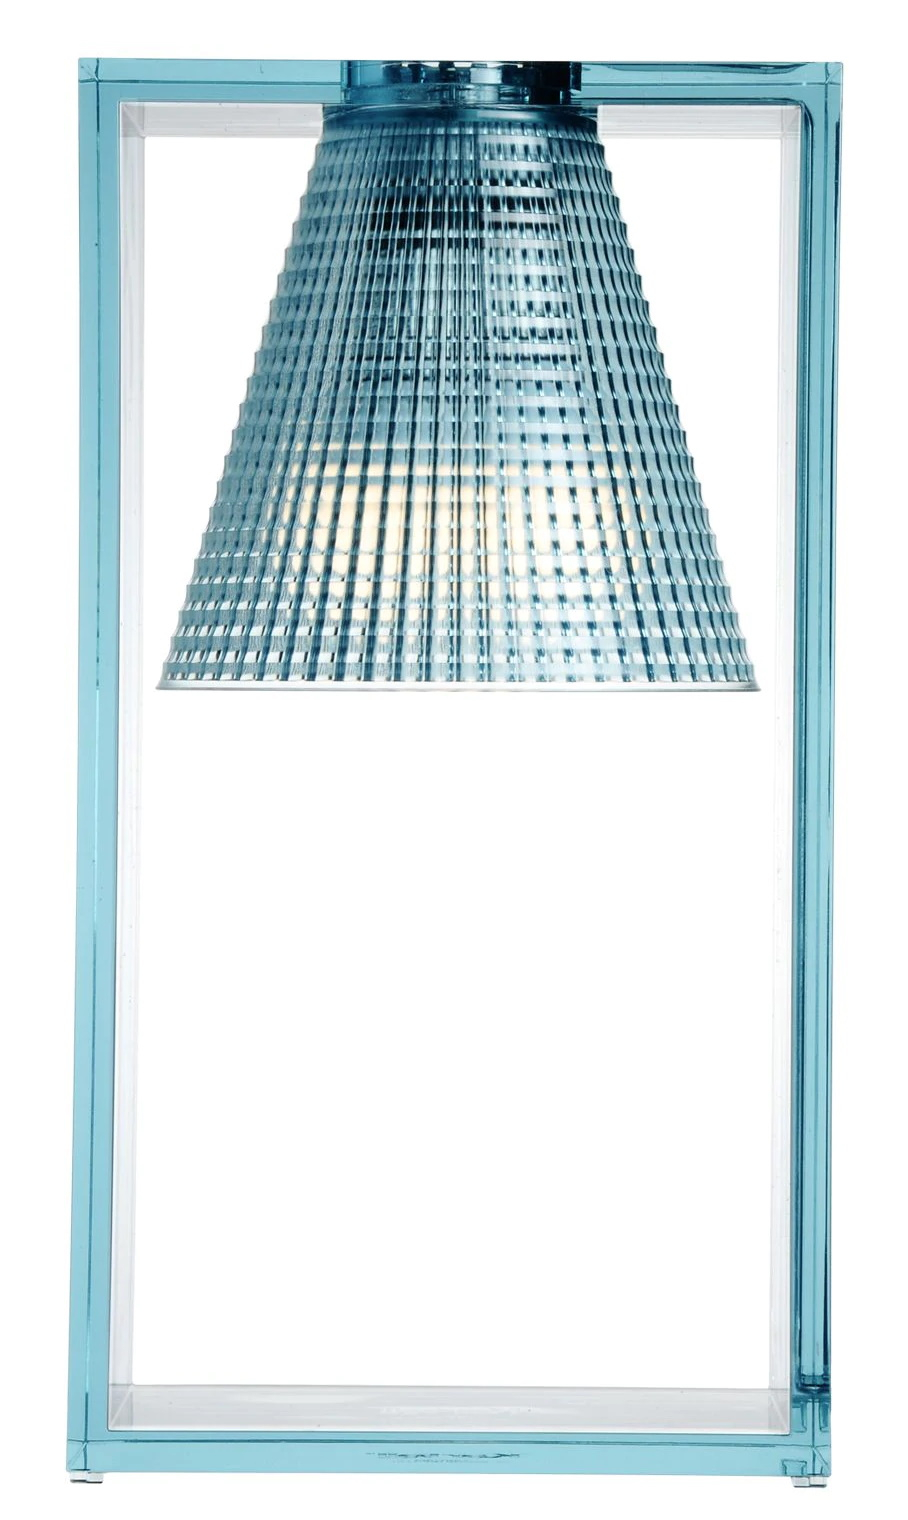 Veioza Kartell Light Air design Eugeni Quitllet 32x17x14cm bleu transparent Kartell imagine 2022 by aka-home.ro